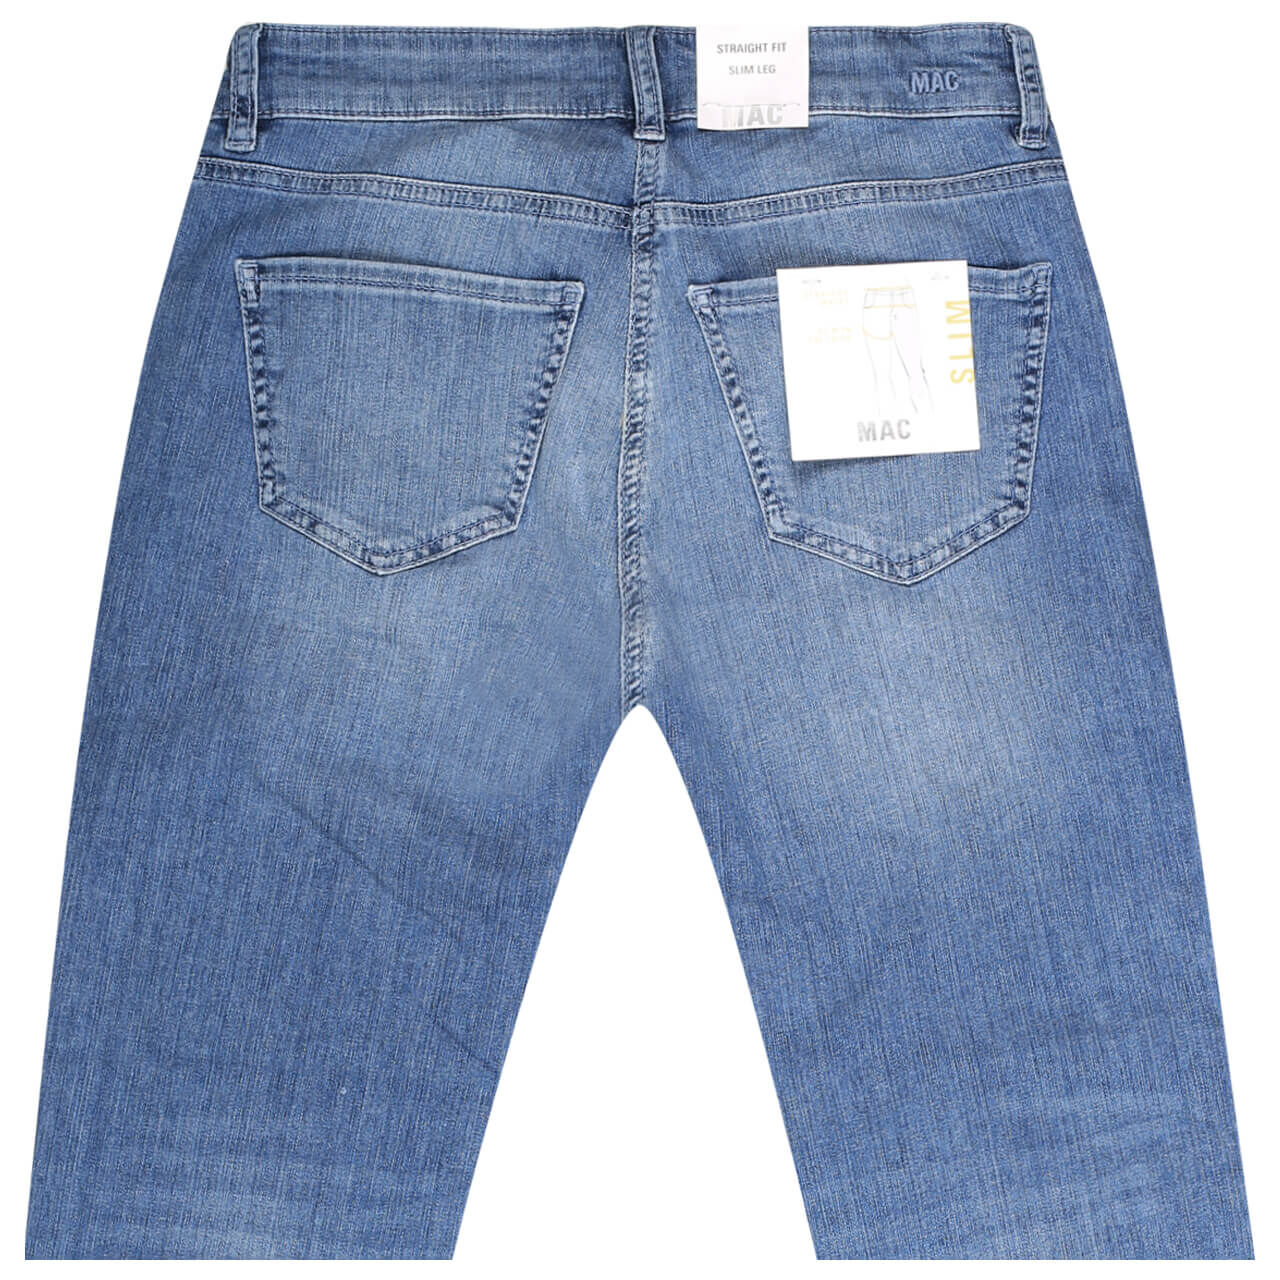 MAC Jeans Slim 7/8 für Damen in Hellblau angewaschen, FarbNr.: D531